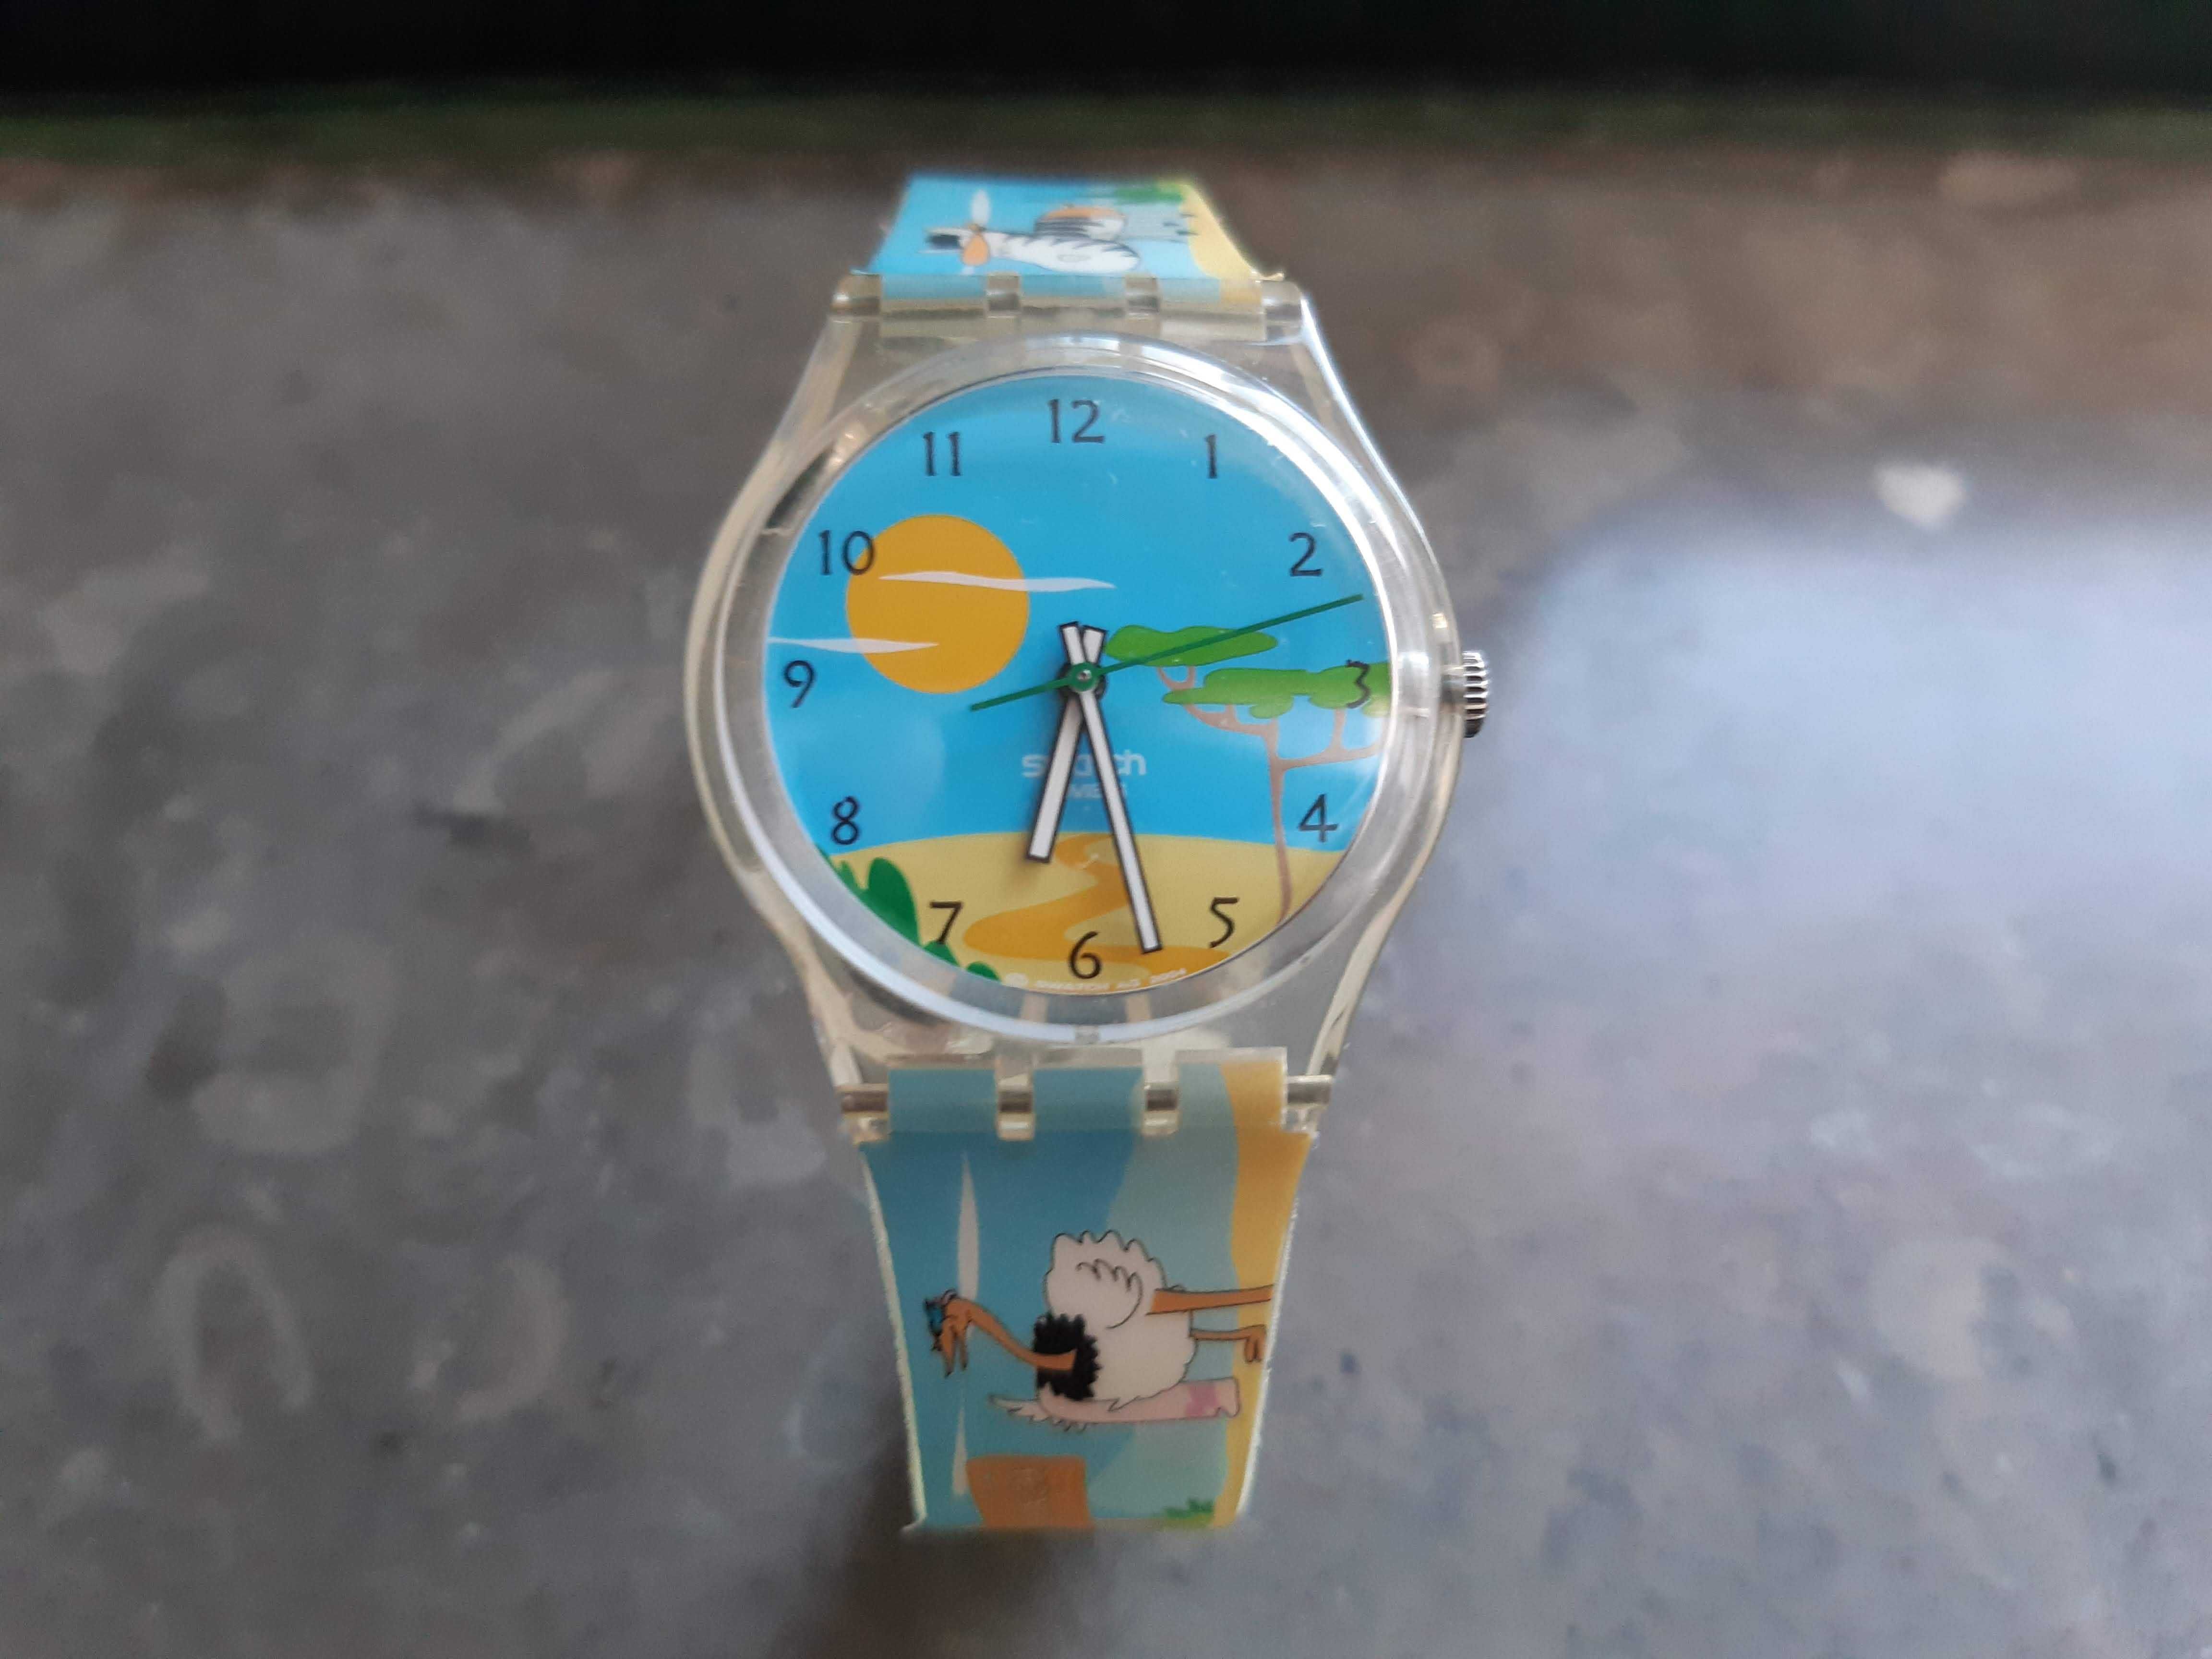 Relógio original swatch, nunca usado